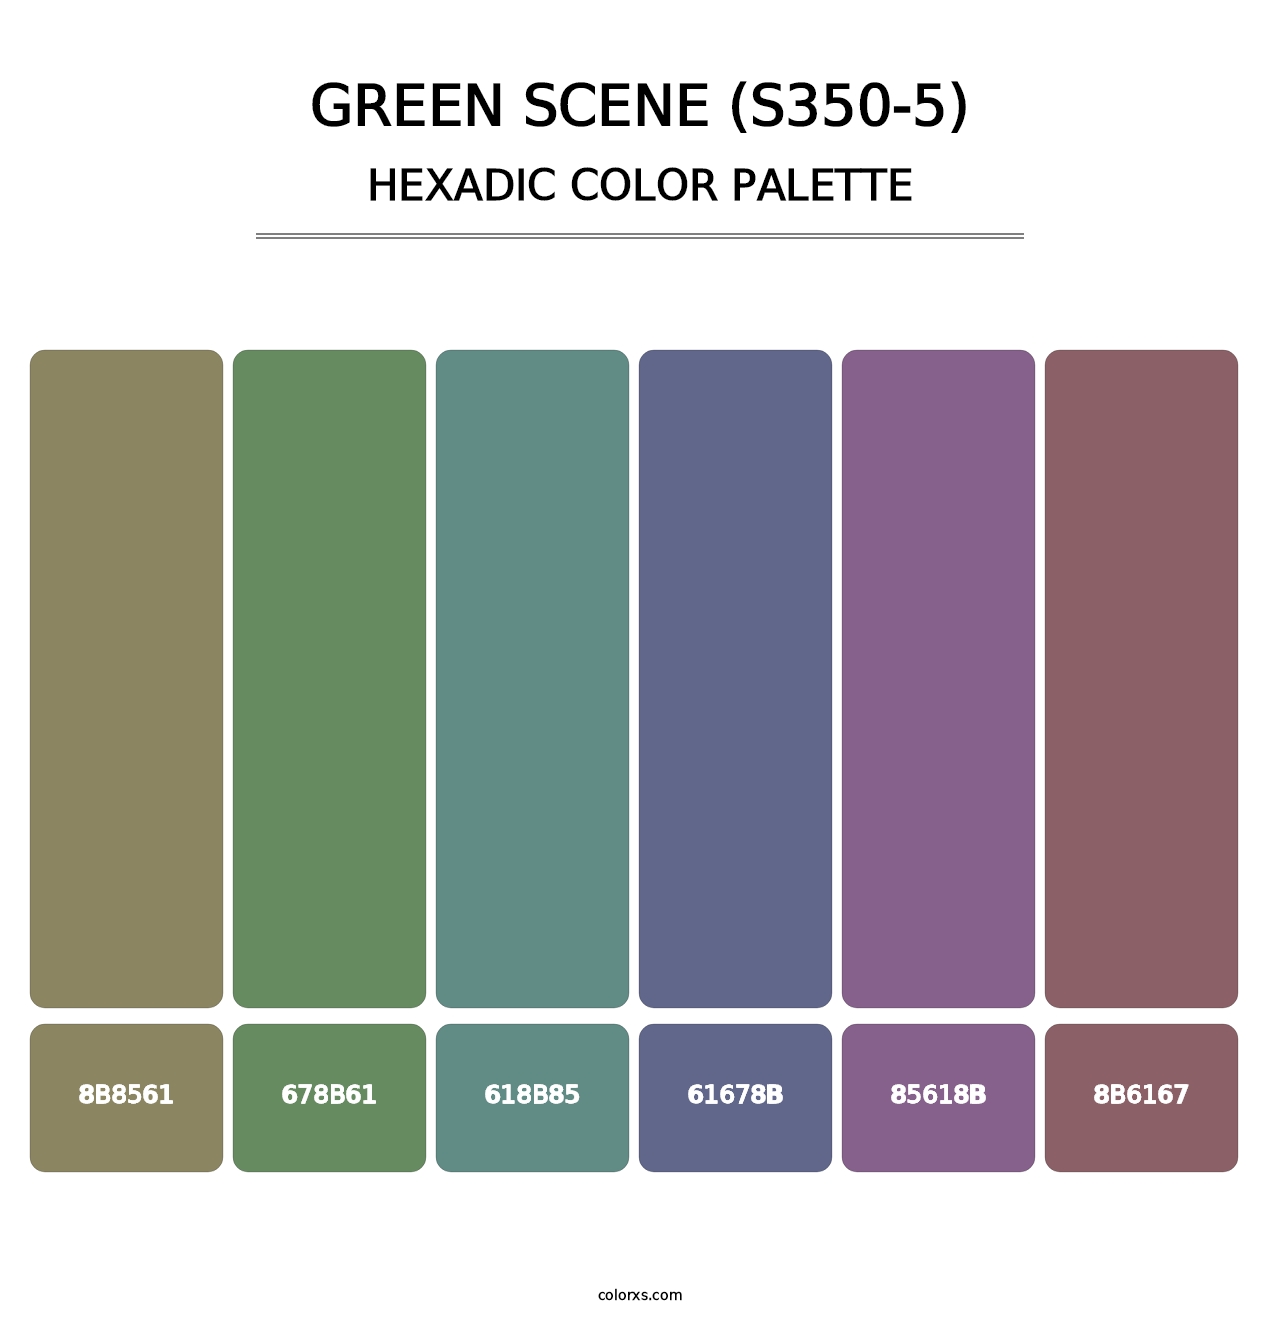 Green Scene (S350-5) - Hexadic Color Palette